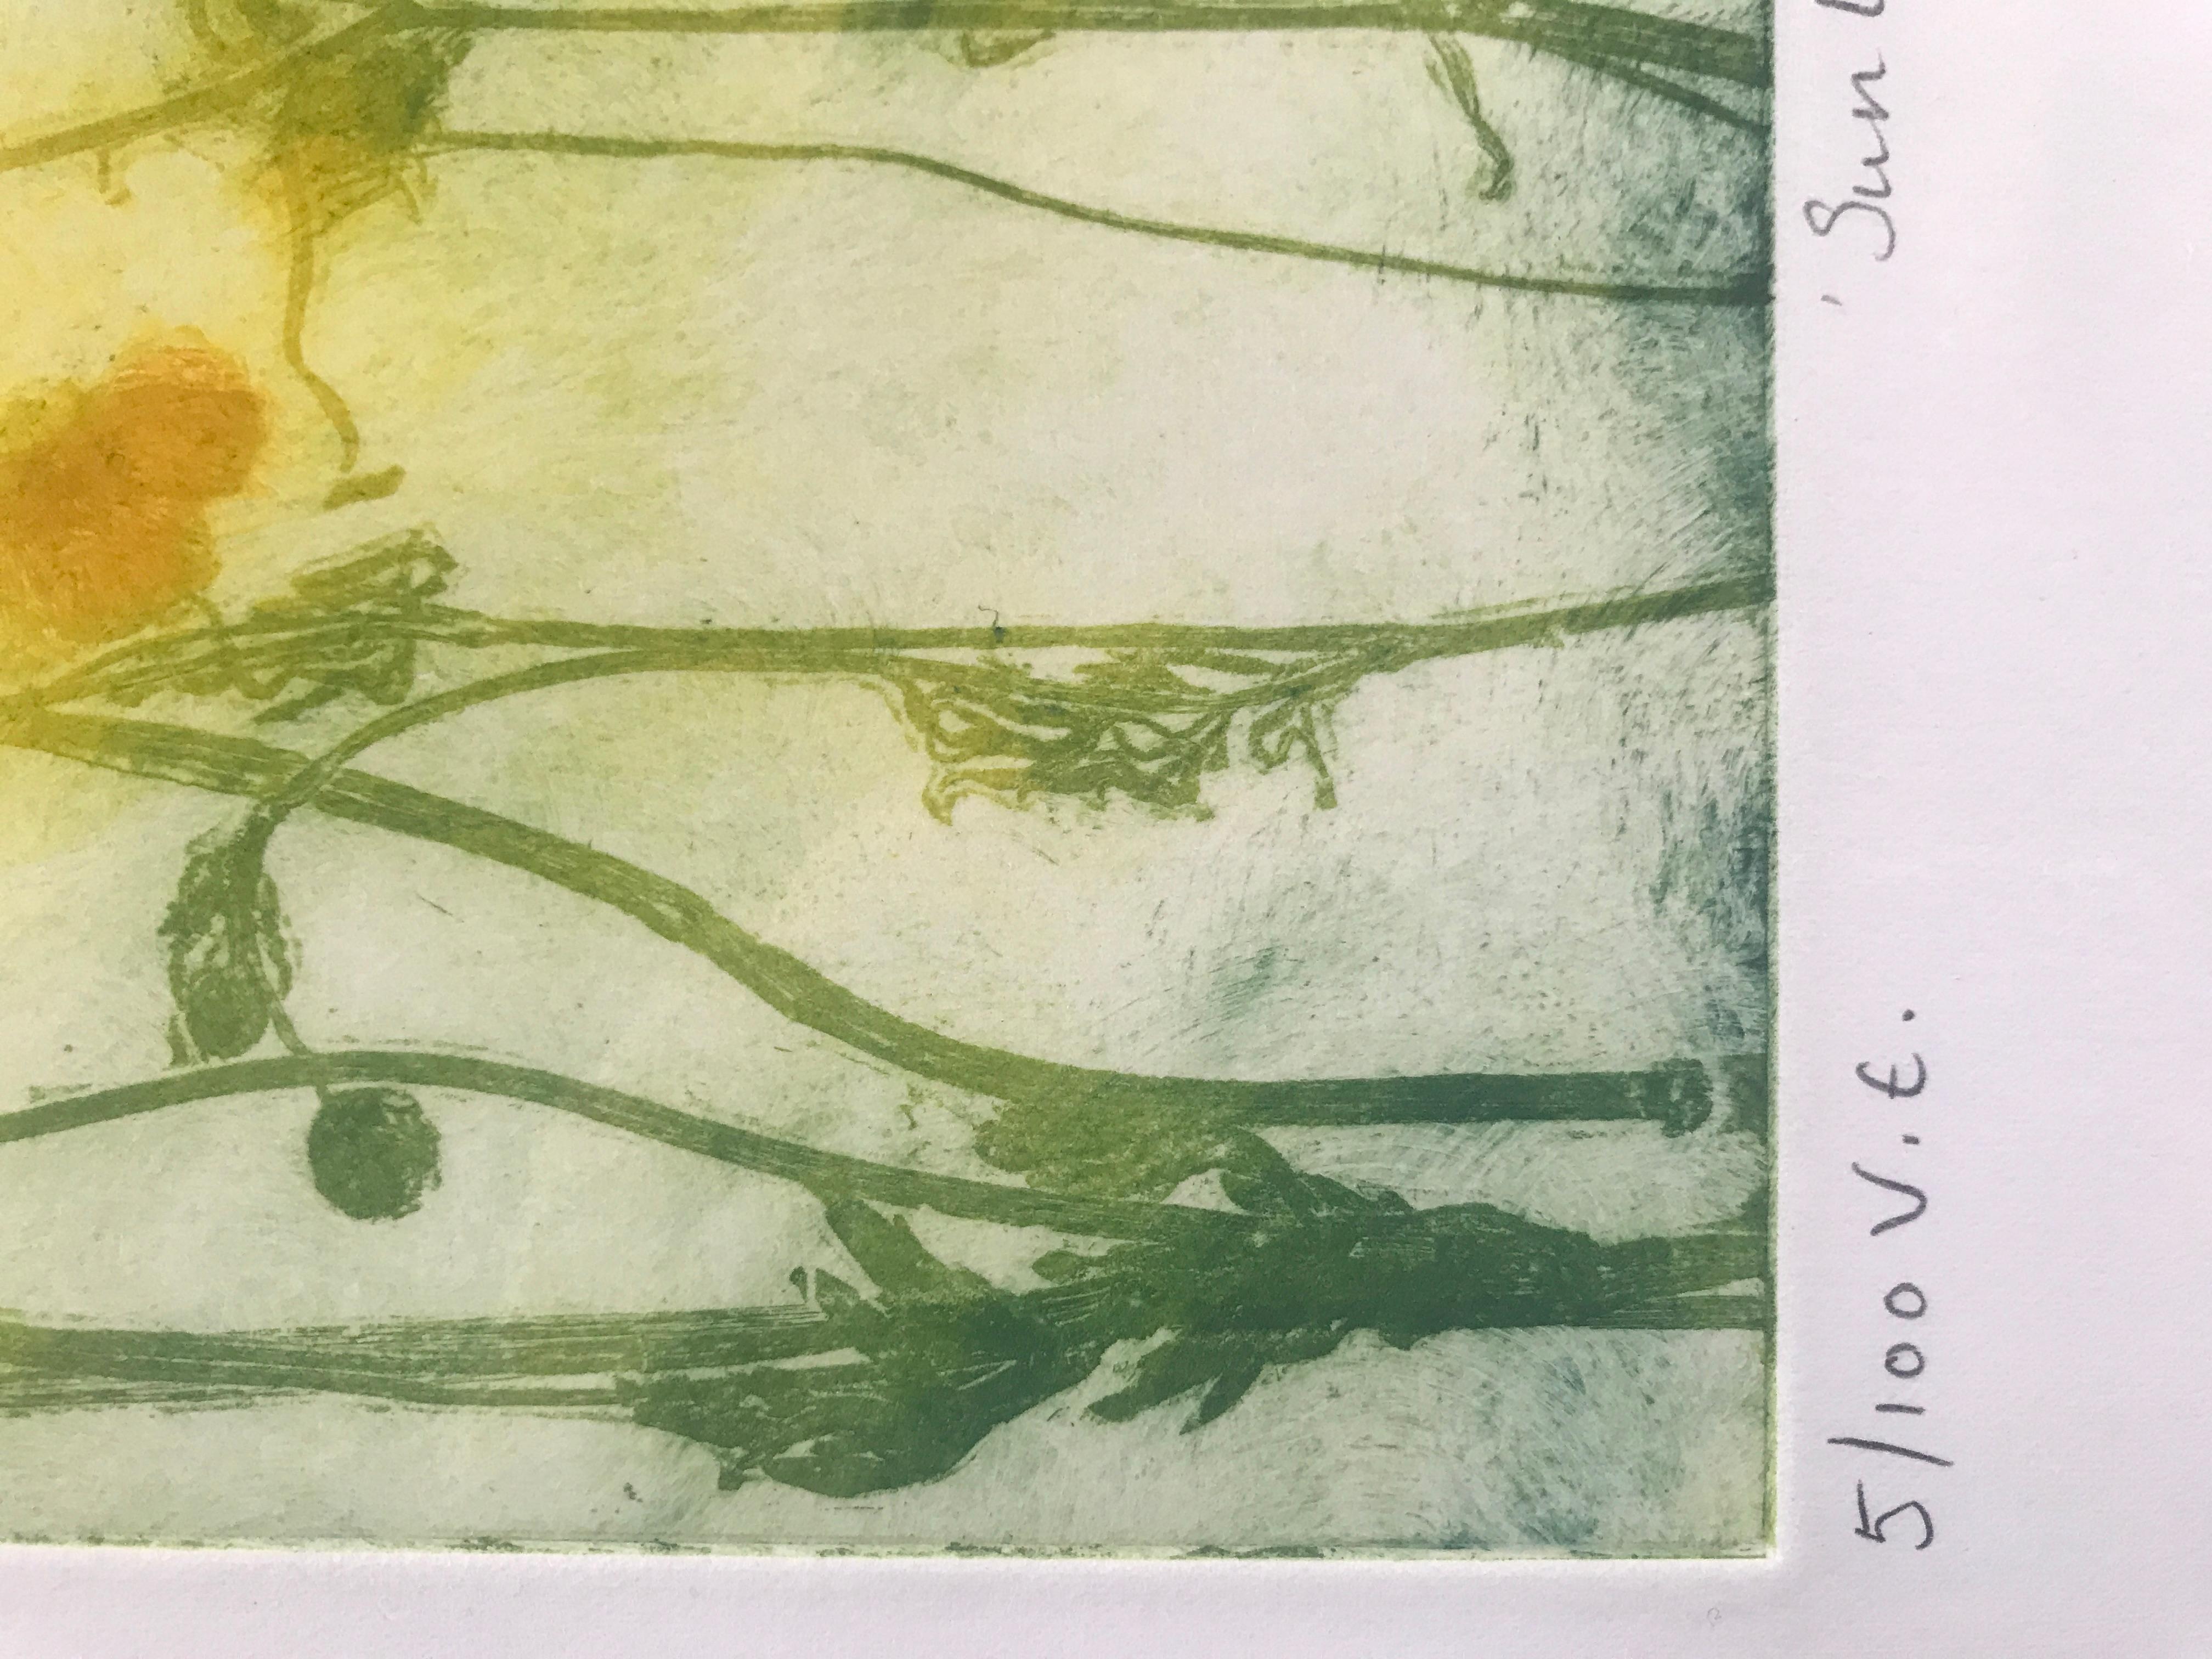 Sunlit Buttercups par Charlie Davies est une impression en édition limitée réalisée à partir de vraies fleurs et de la faune de la nature pour fabriquer la plaque de gravure. Une partie du processus d'impression que Charlie a si bien maîtrisé